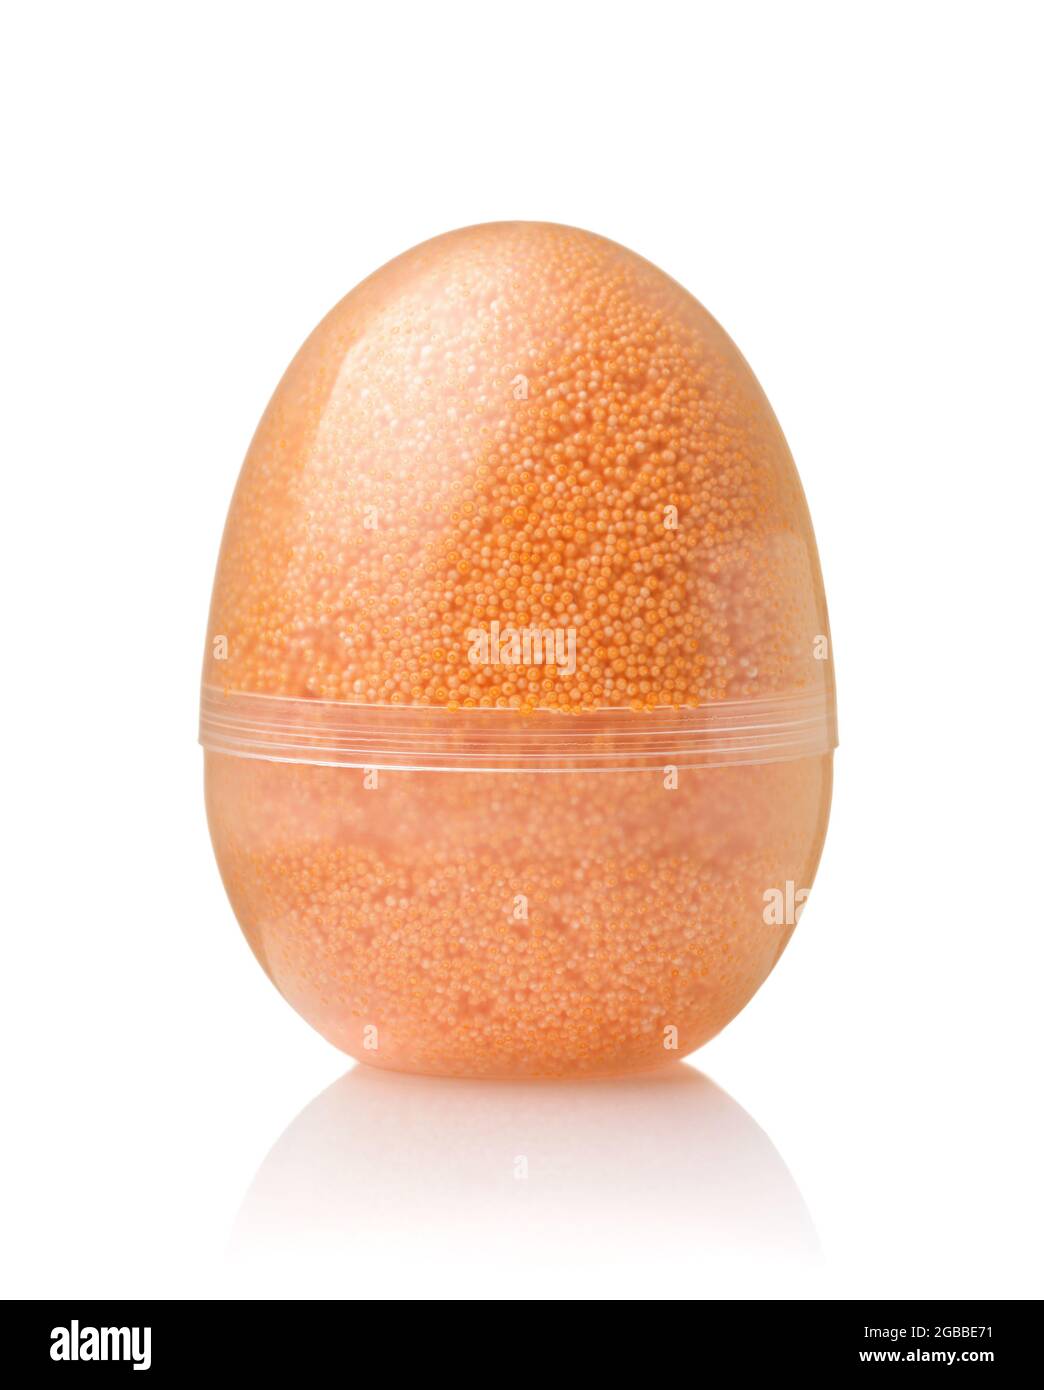 Vorderansicht eines transparenten Eierbehälters voller orangefarbener modellierter Schaumperlen, isoliert auf Weiß Stockfoto